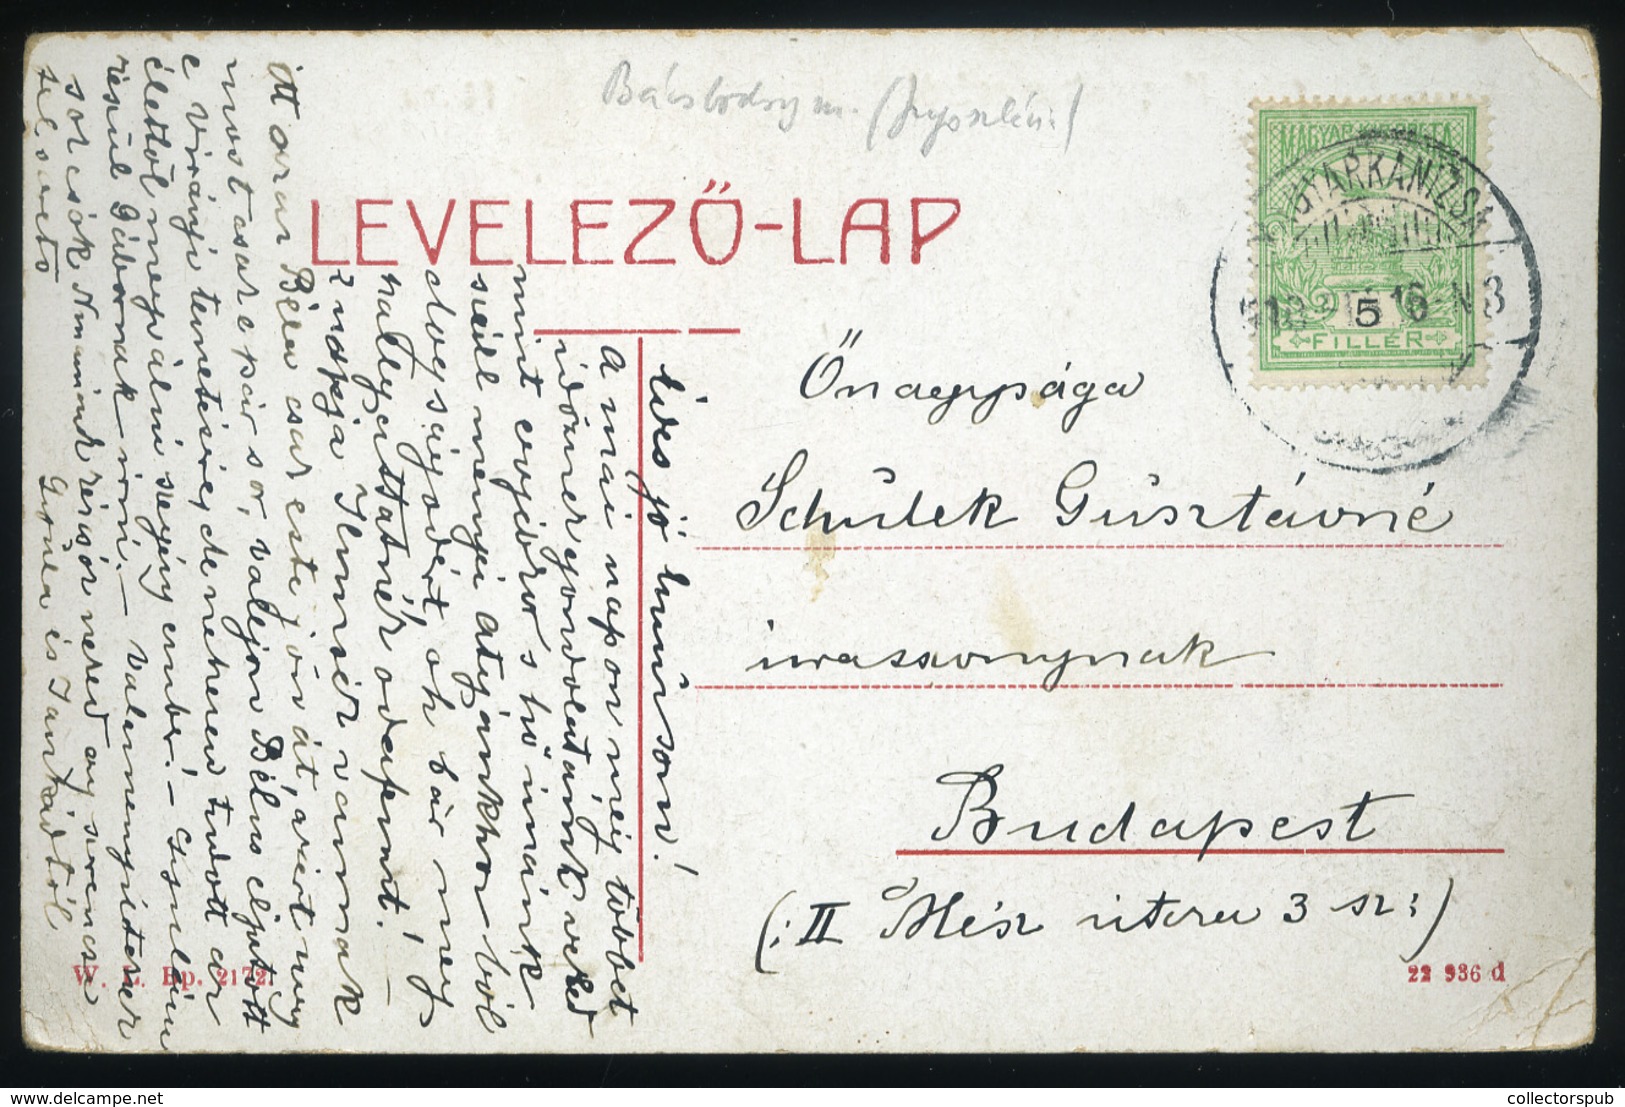 MAGYARKANIZSA 1915. Régi Képeslap , Weisz Lipót - Hungary